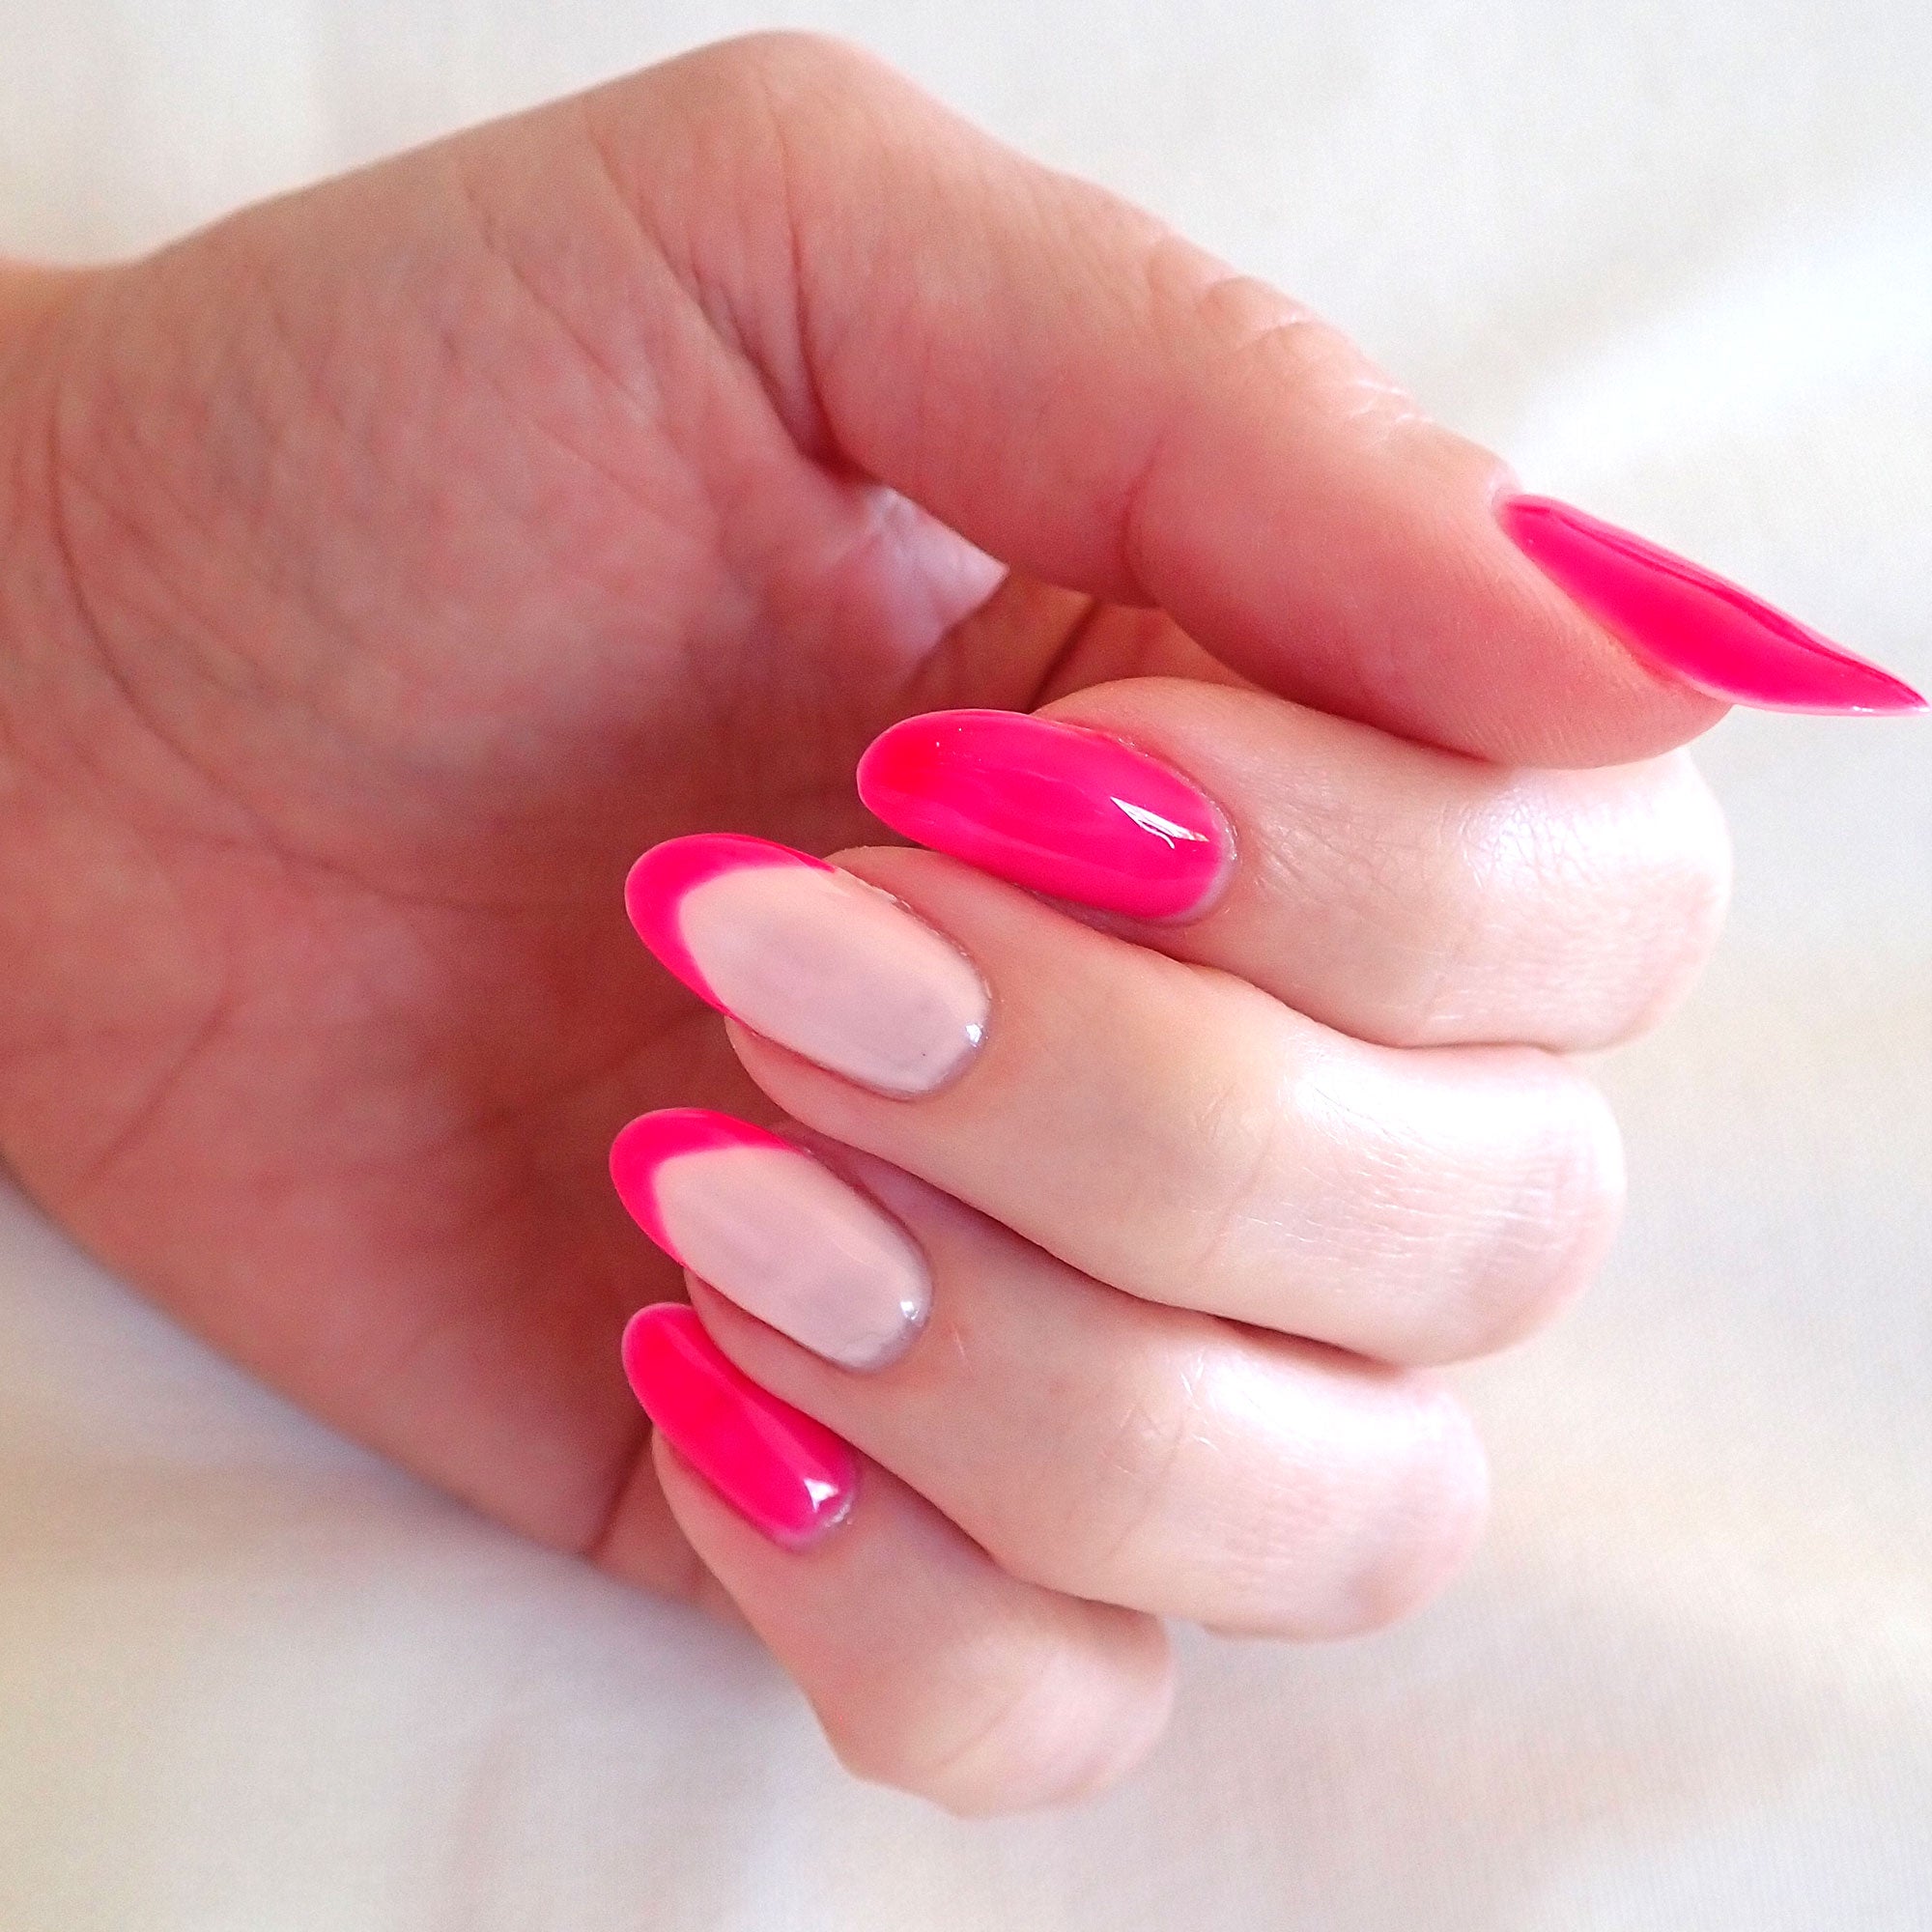 french manicure tips hot pink nails pink gel polish by nail art bay Australia nail art